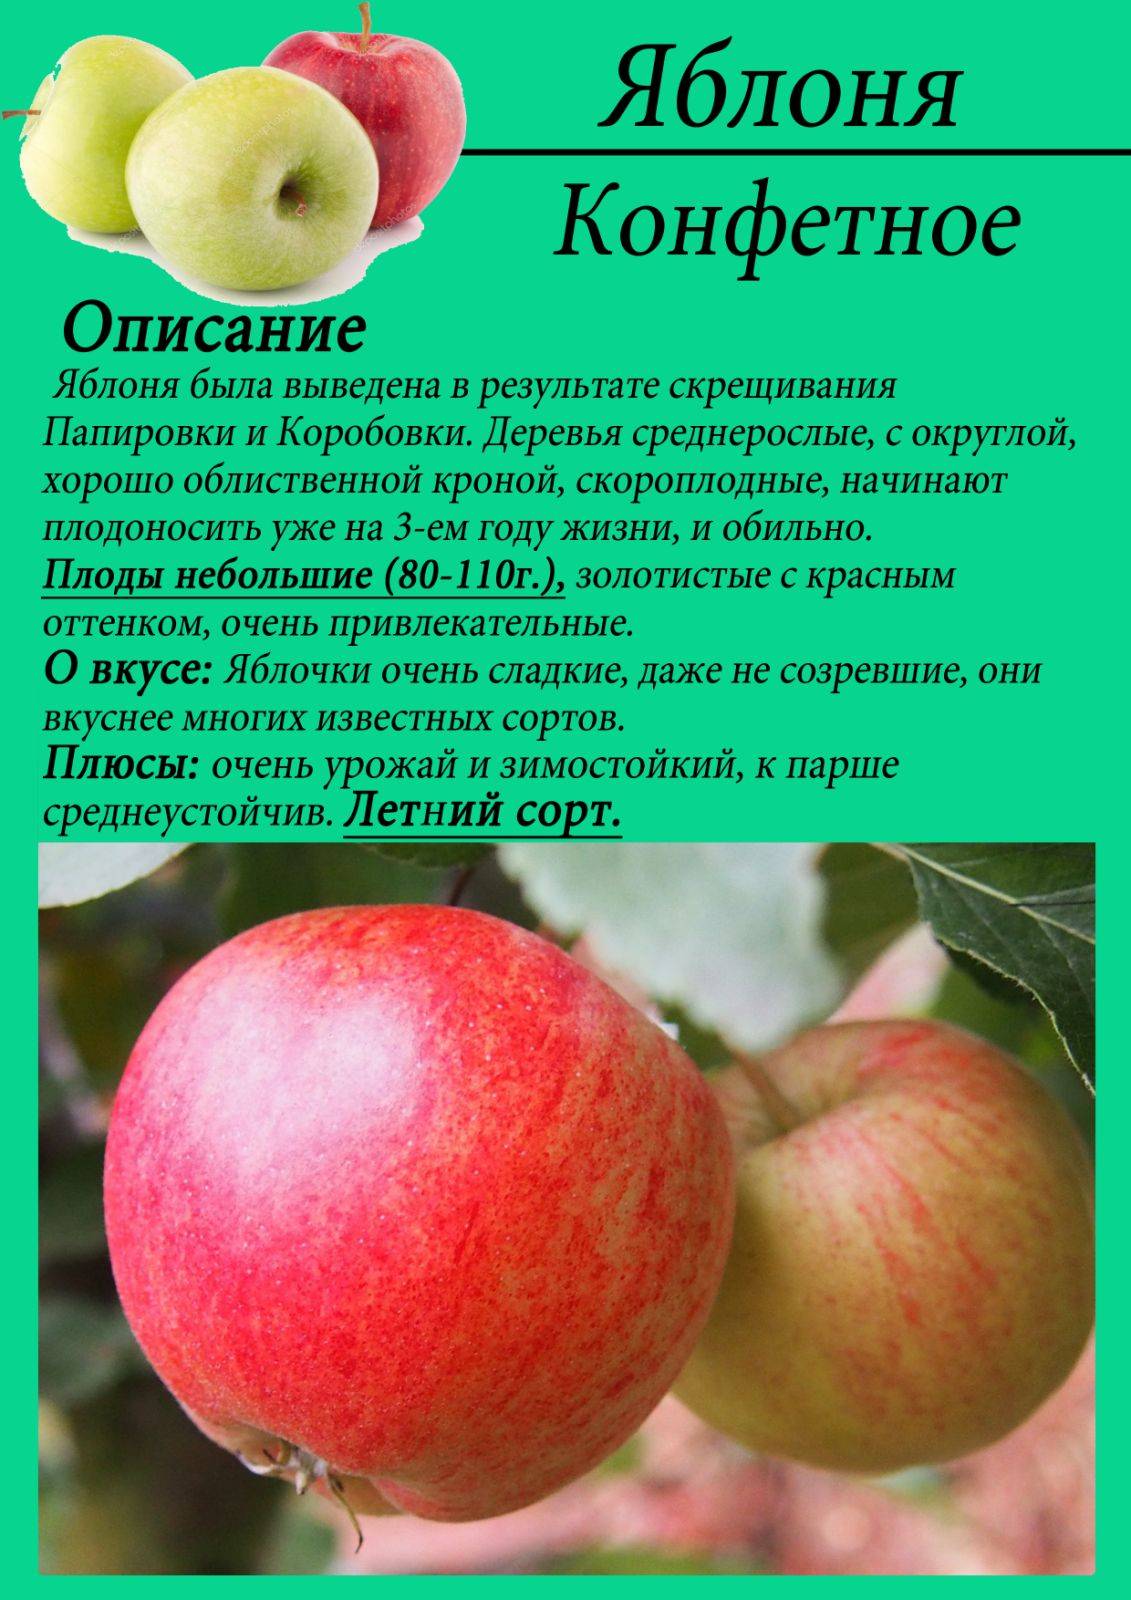 Яблоня коричневое полосатое: описание и характеристики сорта, разновидности, посадка и уход